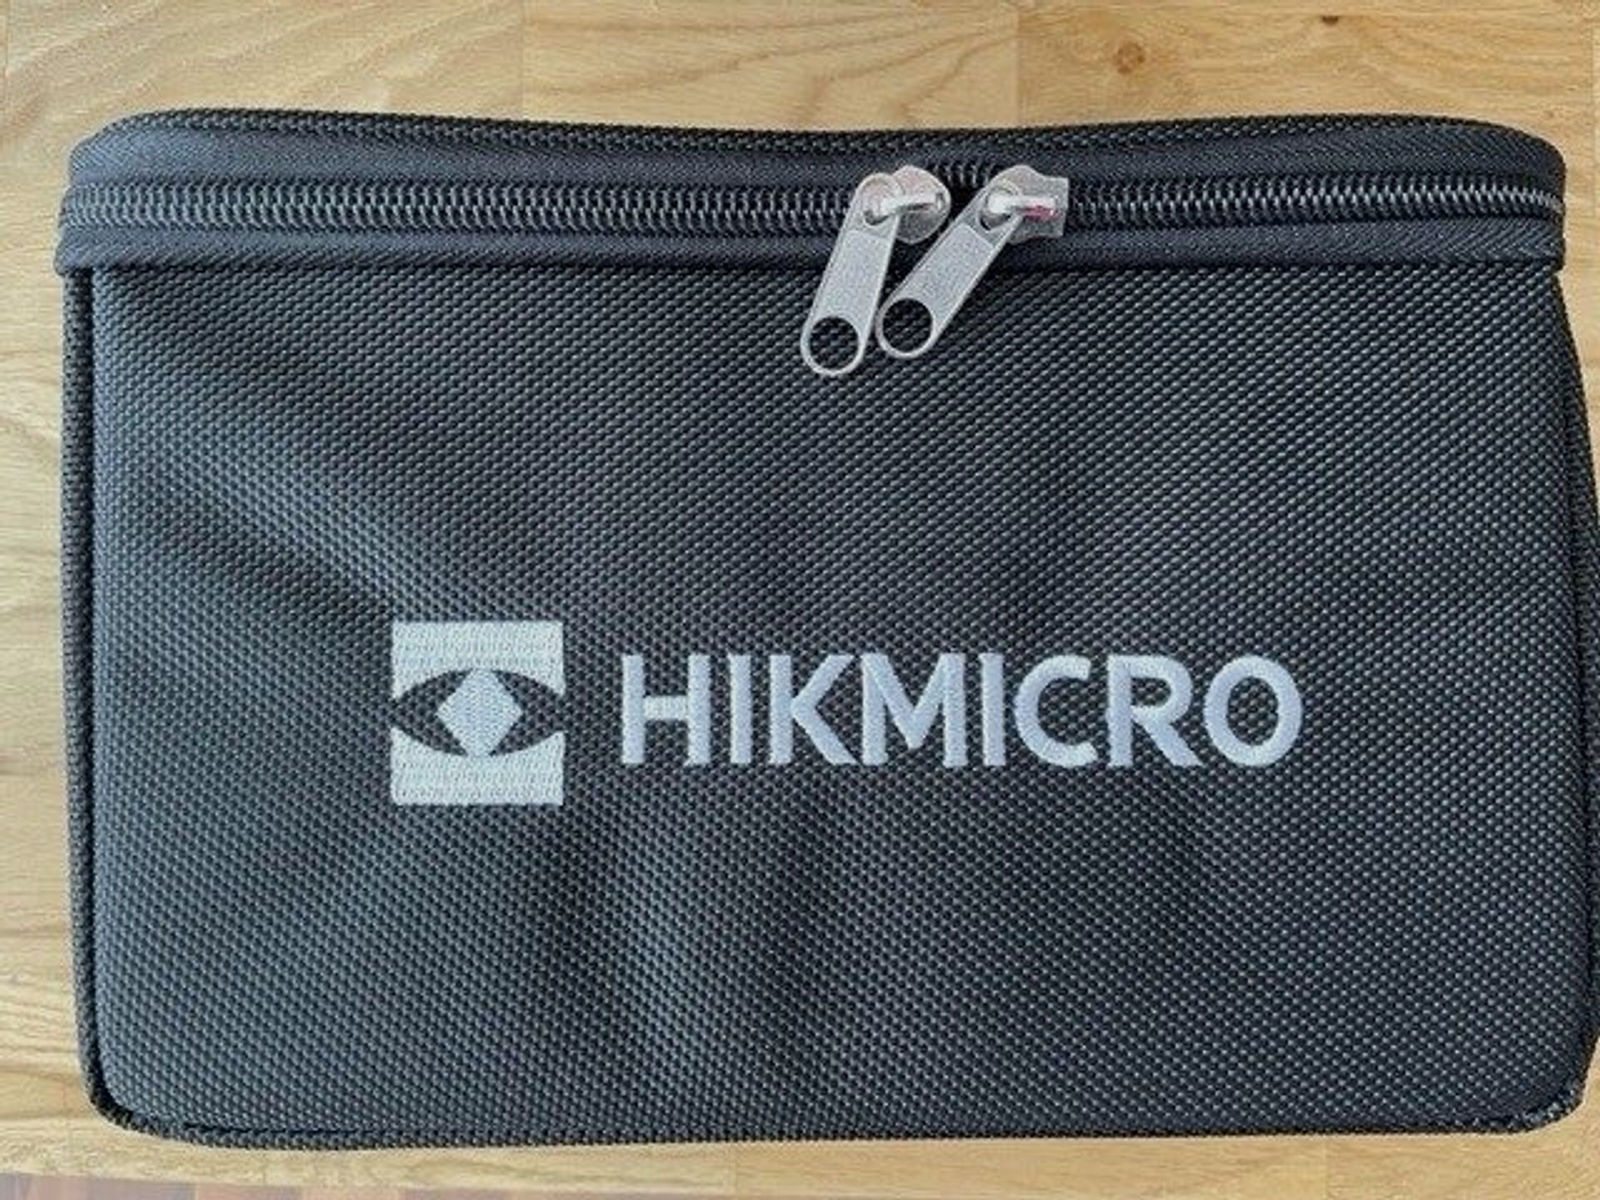 HIKMicro Wärmebild Vorsatzgerät	 Thunder pro TH 35 PC